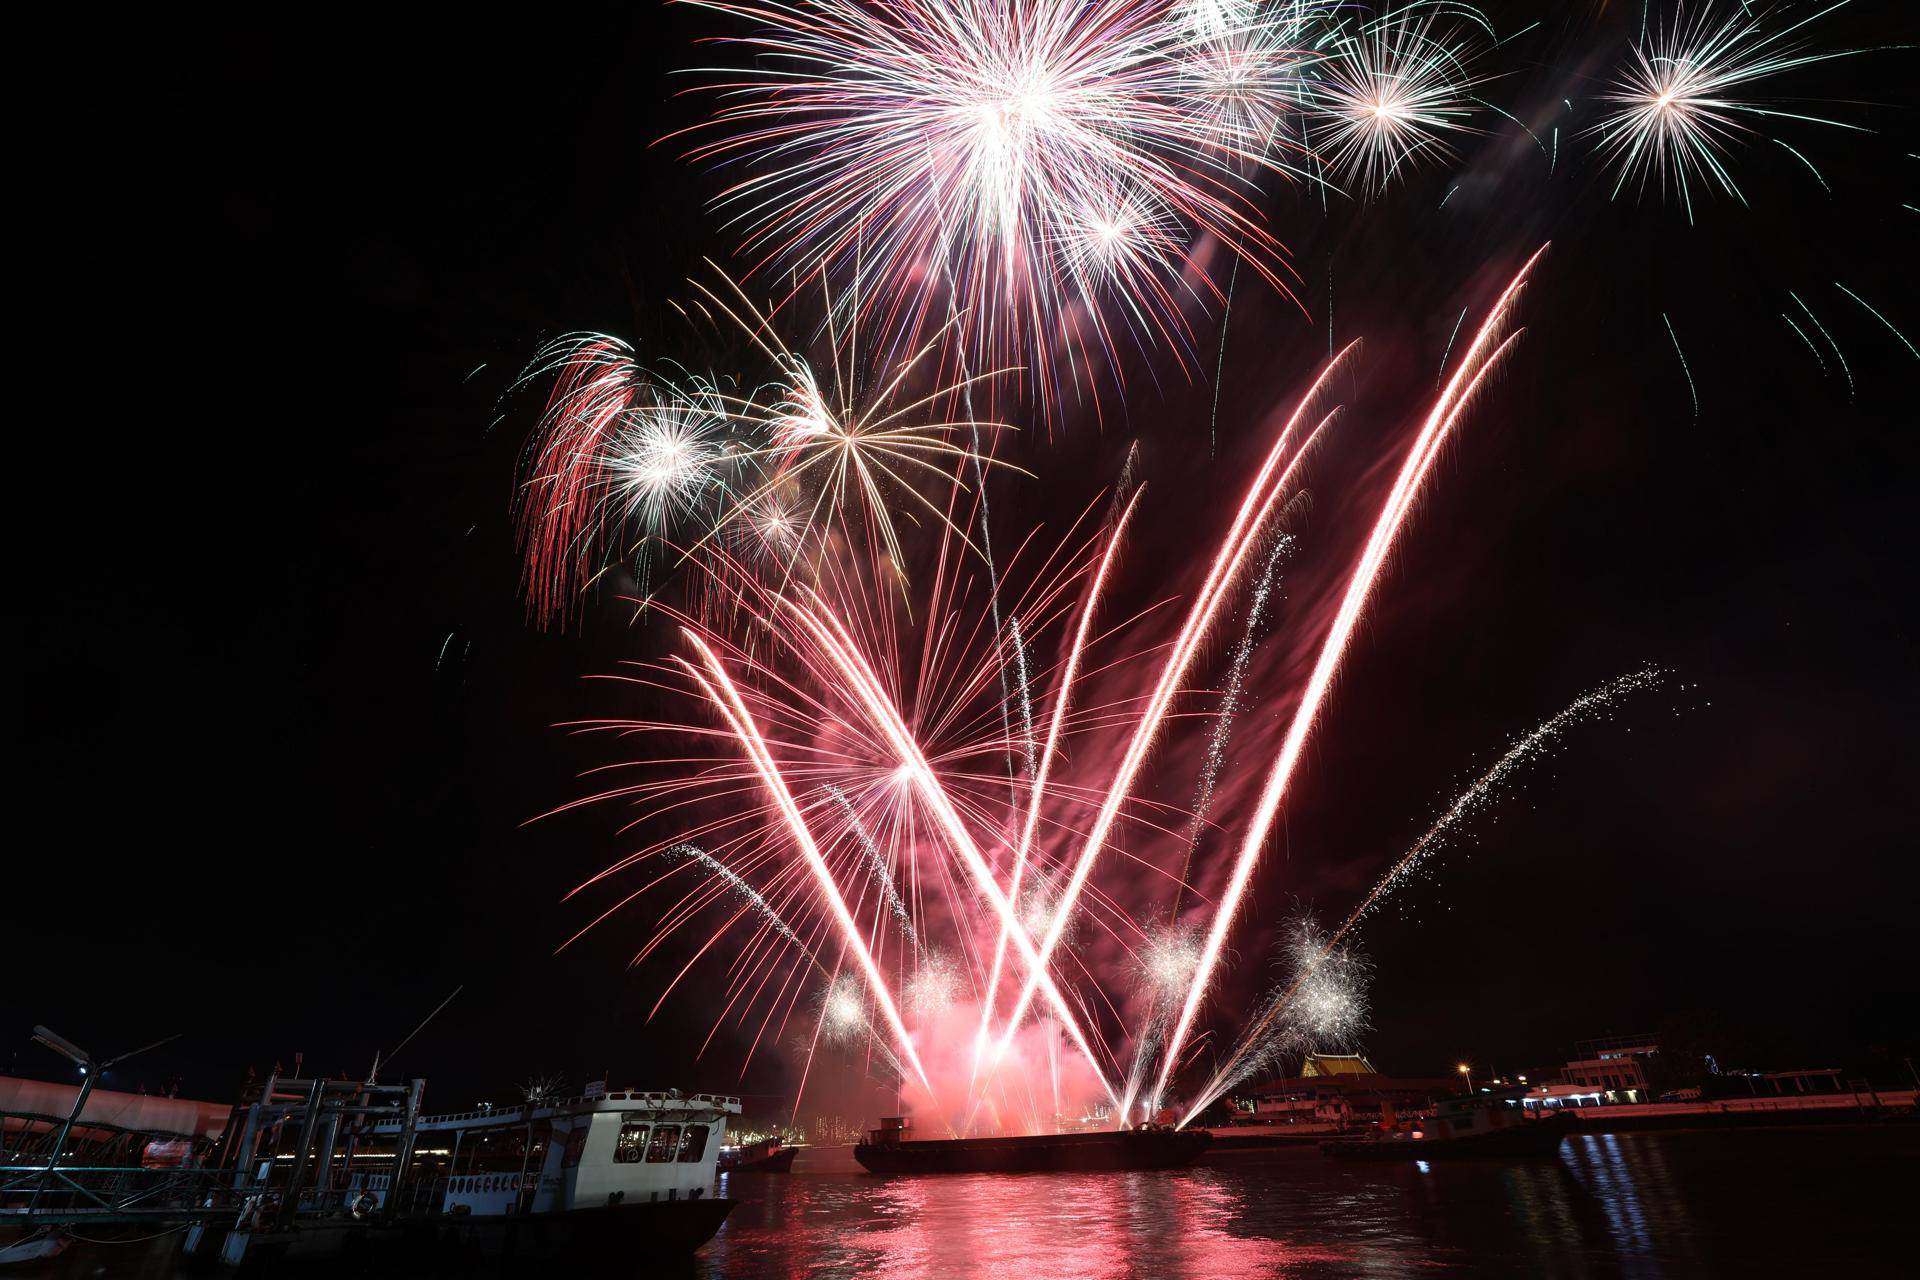 Vista de los fuegos artificiales sobre el puente Bolte de Melbourne (Australia) para celebrar el Año Nuevo.